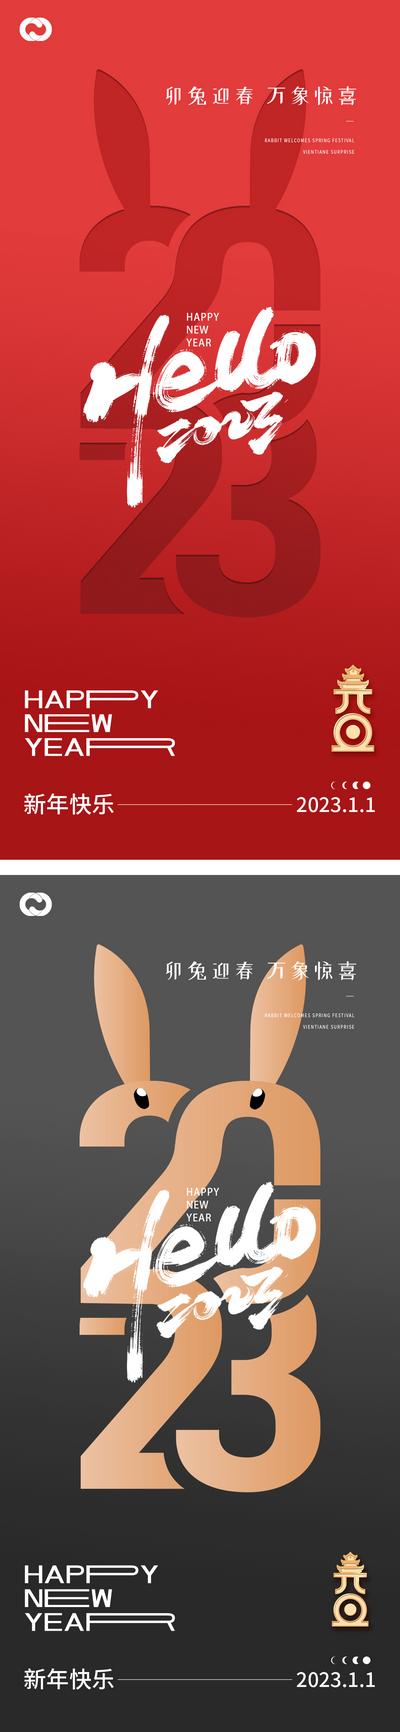 南门网 海报 地产 公历节日 2023 元旦 兔年 春节 小年 除夕 兔子